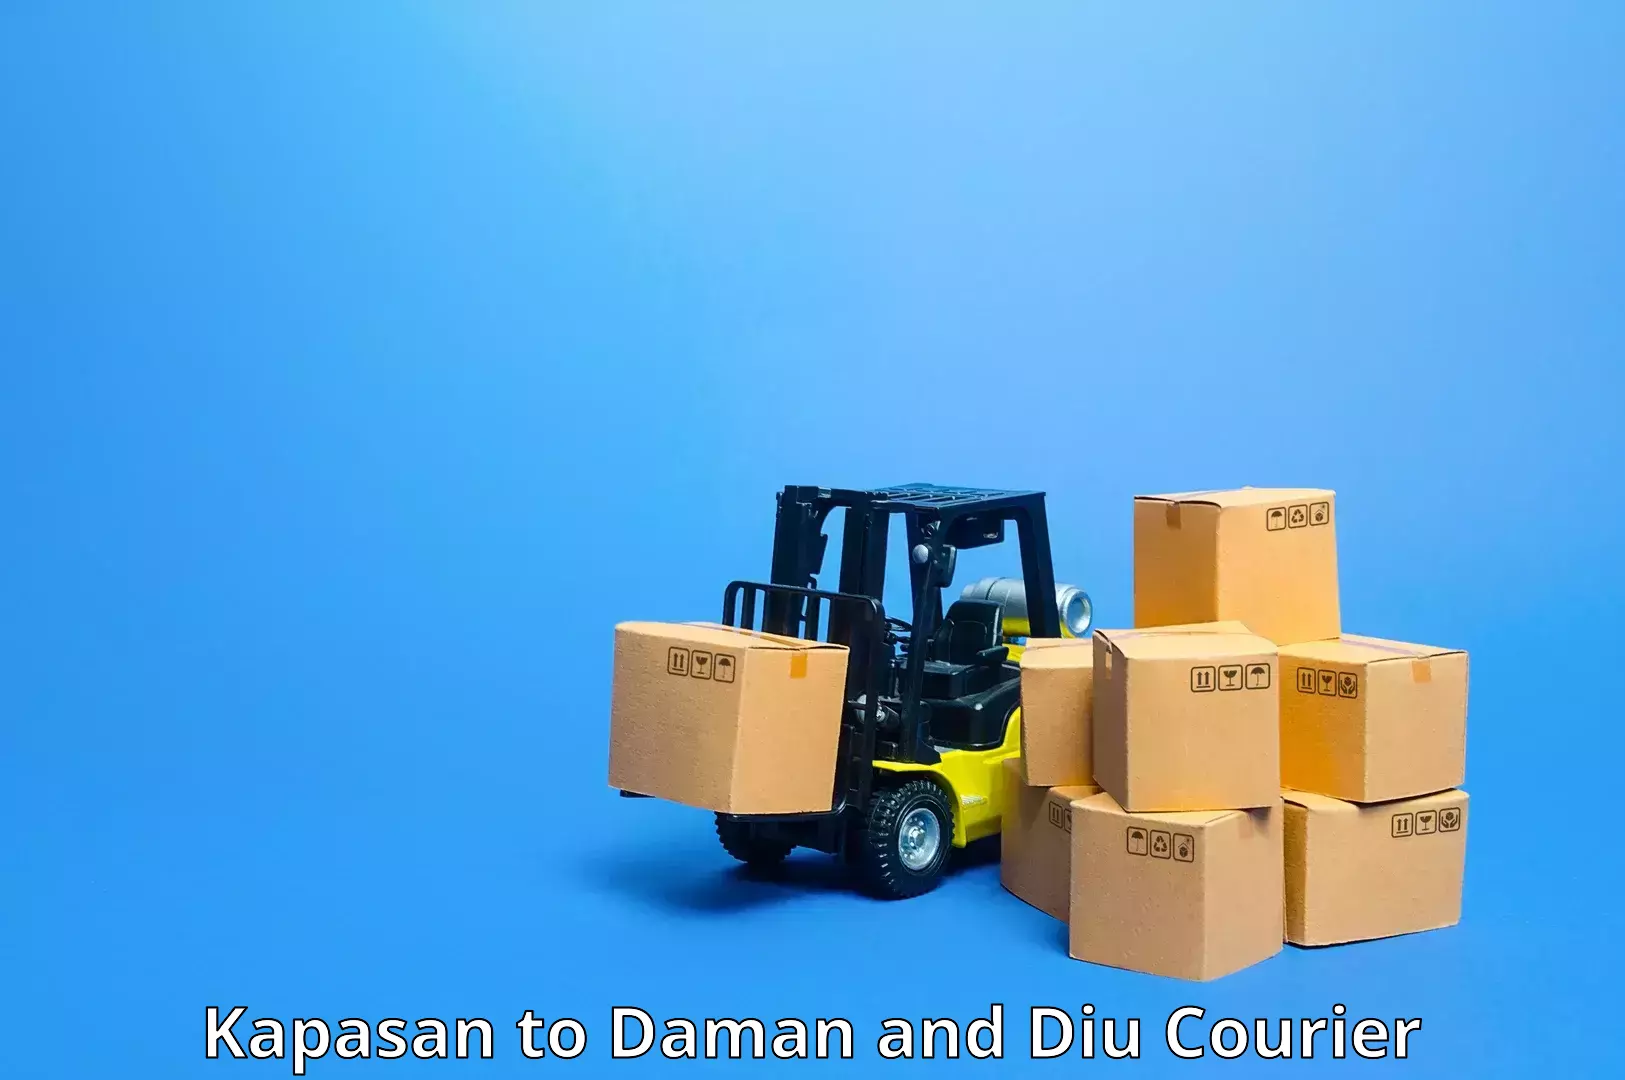 Flexible shipping options Kapasan to Diu